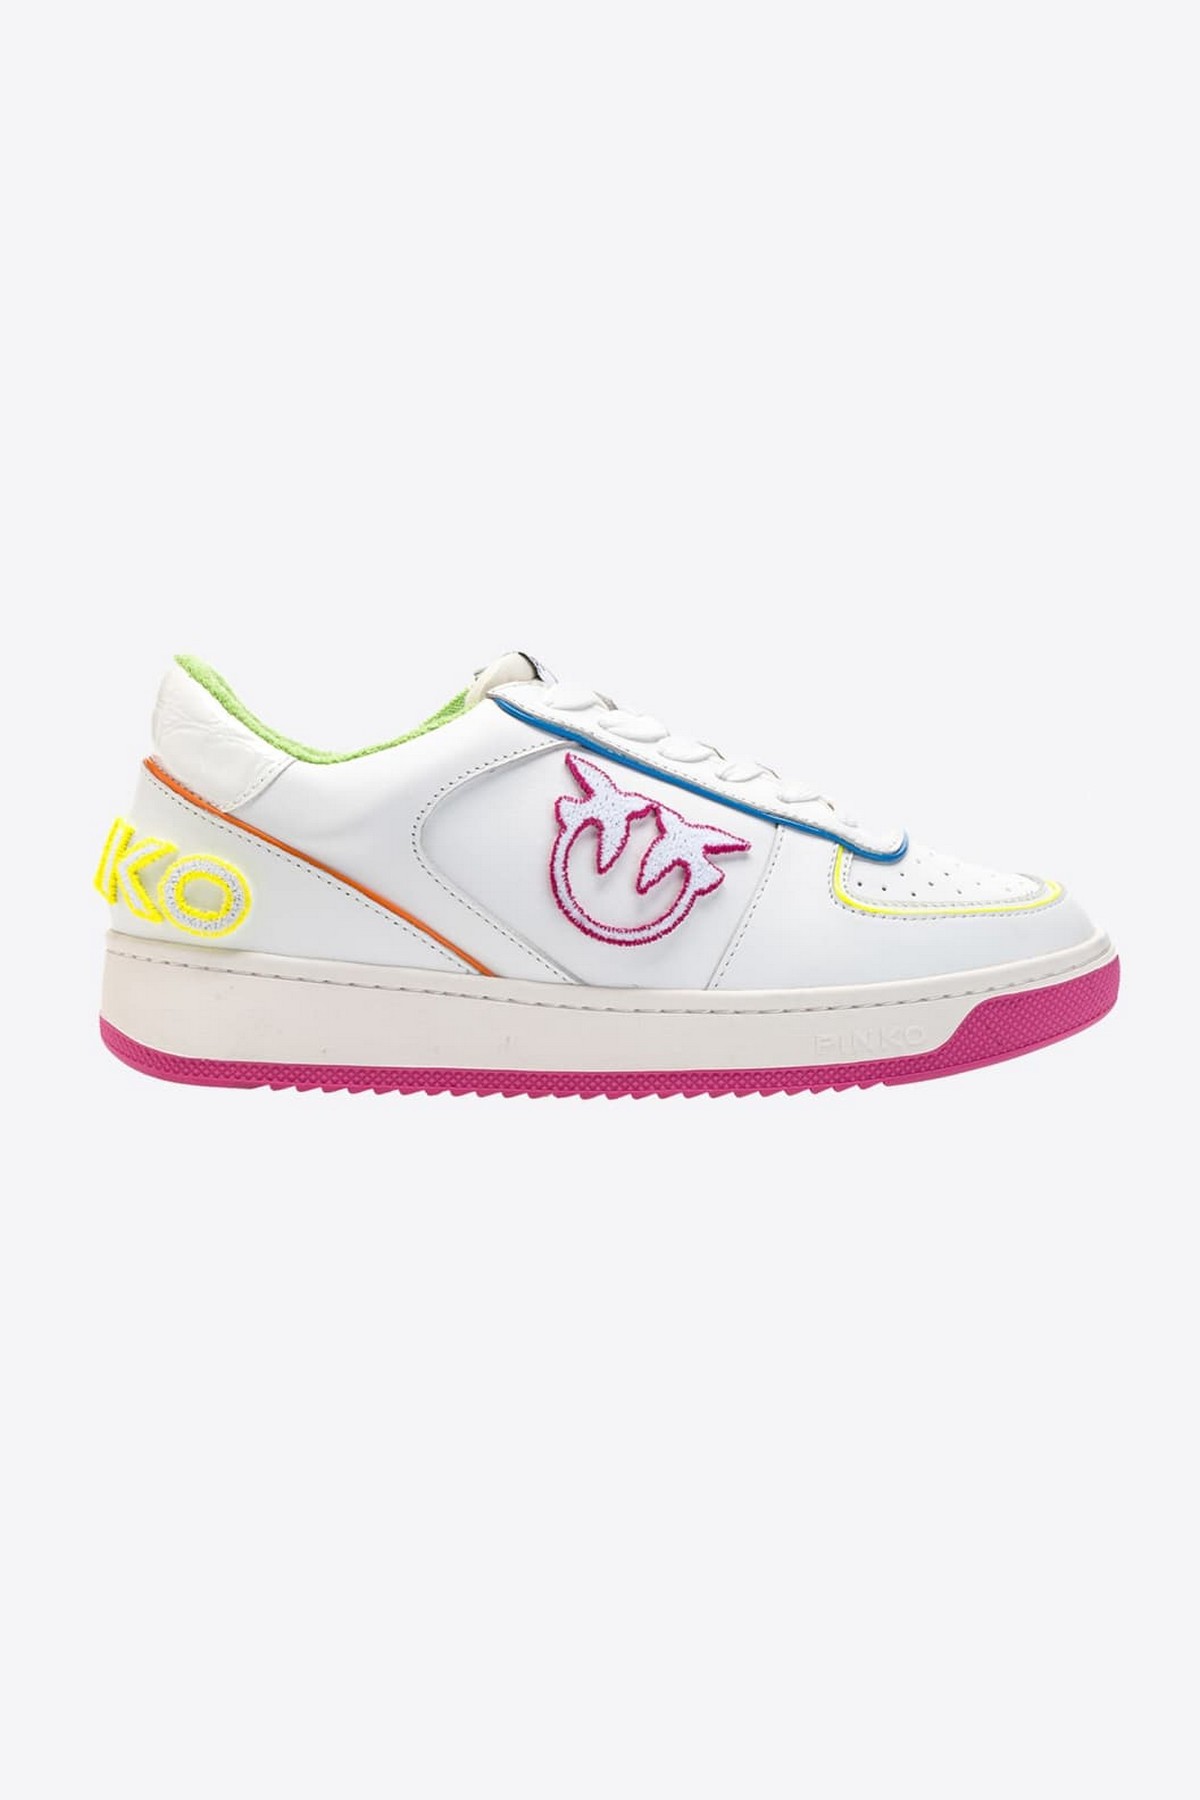 Sneaker wit fluo in de kleur wit neon van het merk Pinko